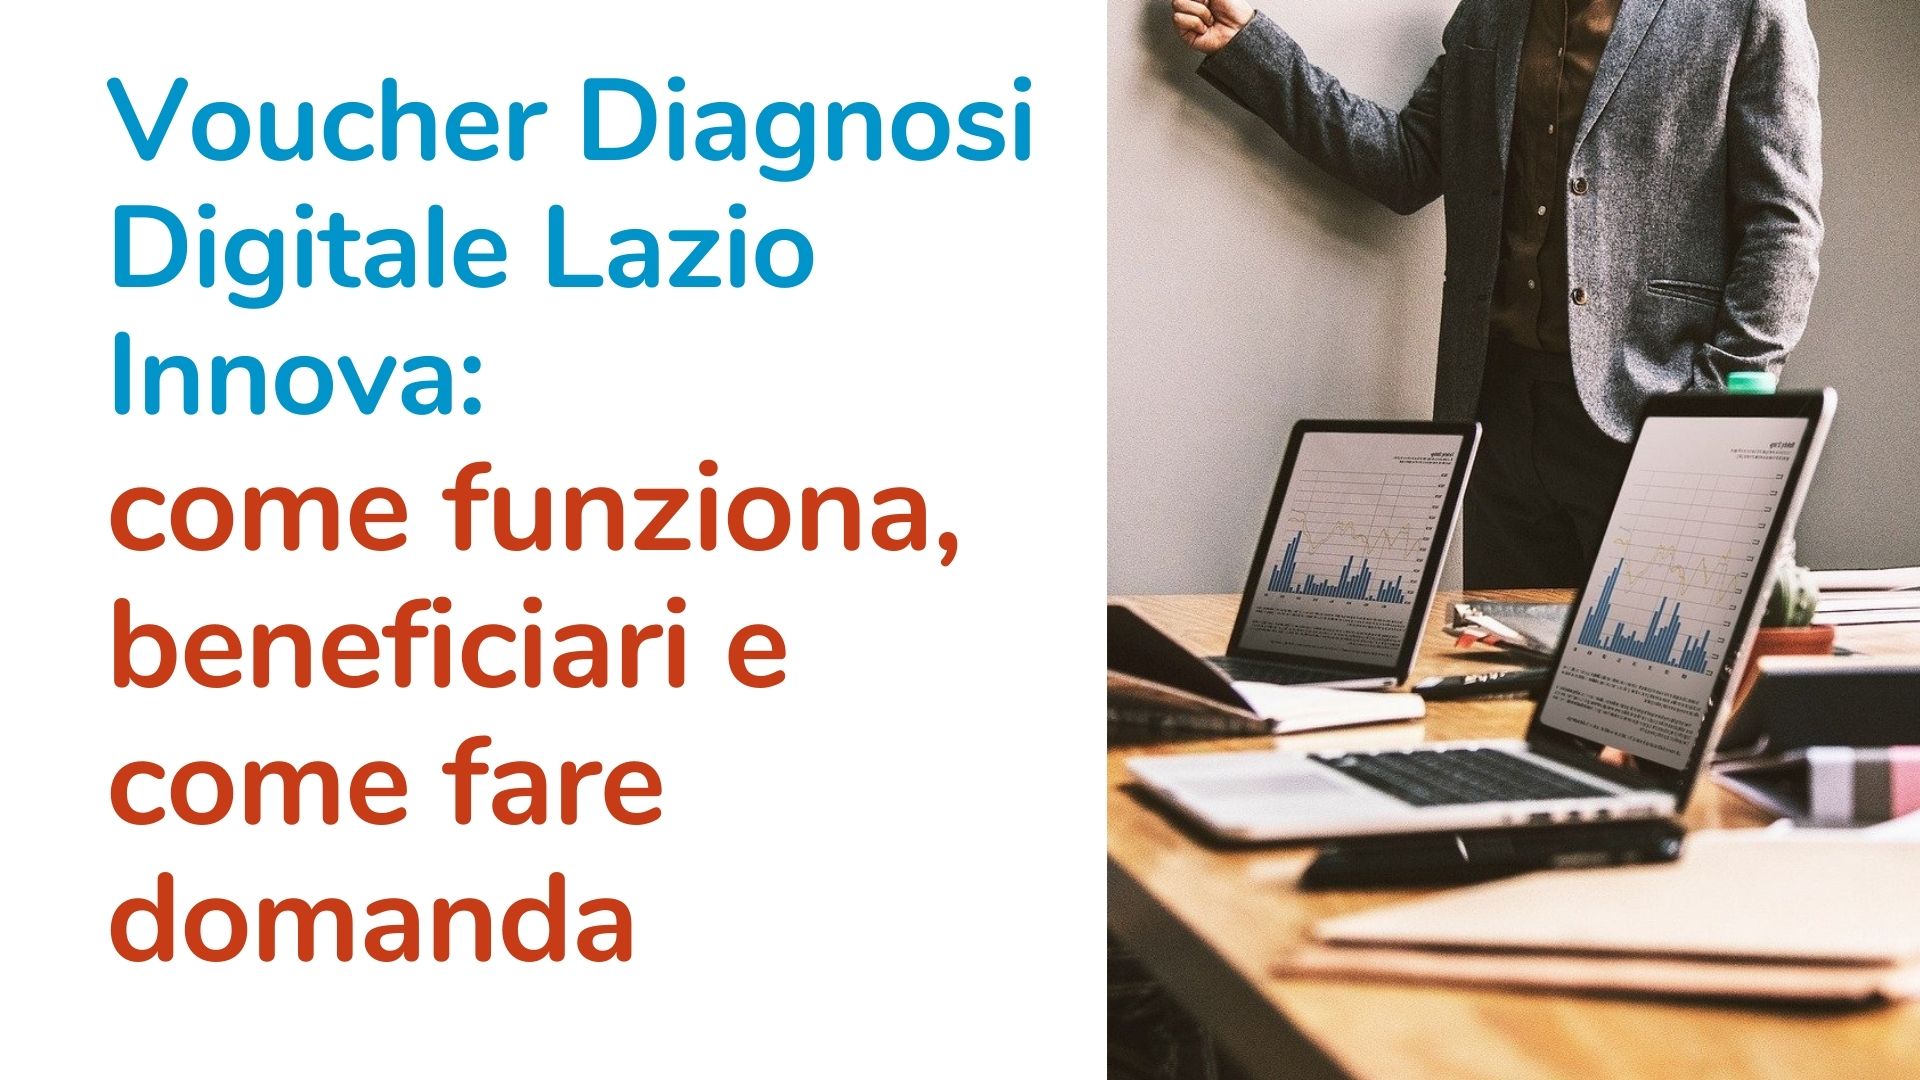 Voucher Diagnosi Digitale Lazio Innova: come funziona, beneficiari e come fare domanda